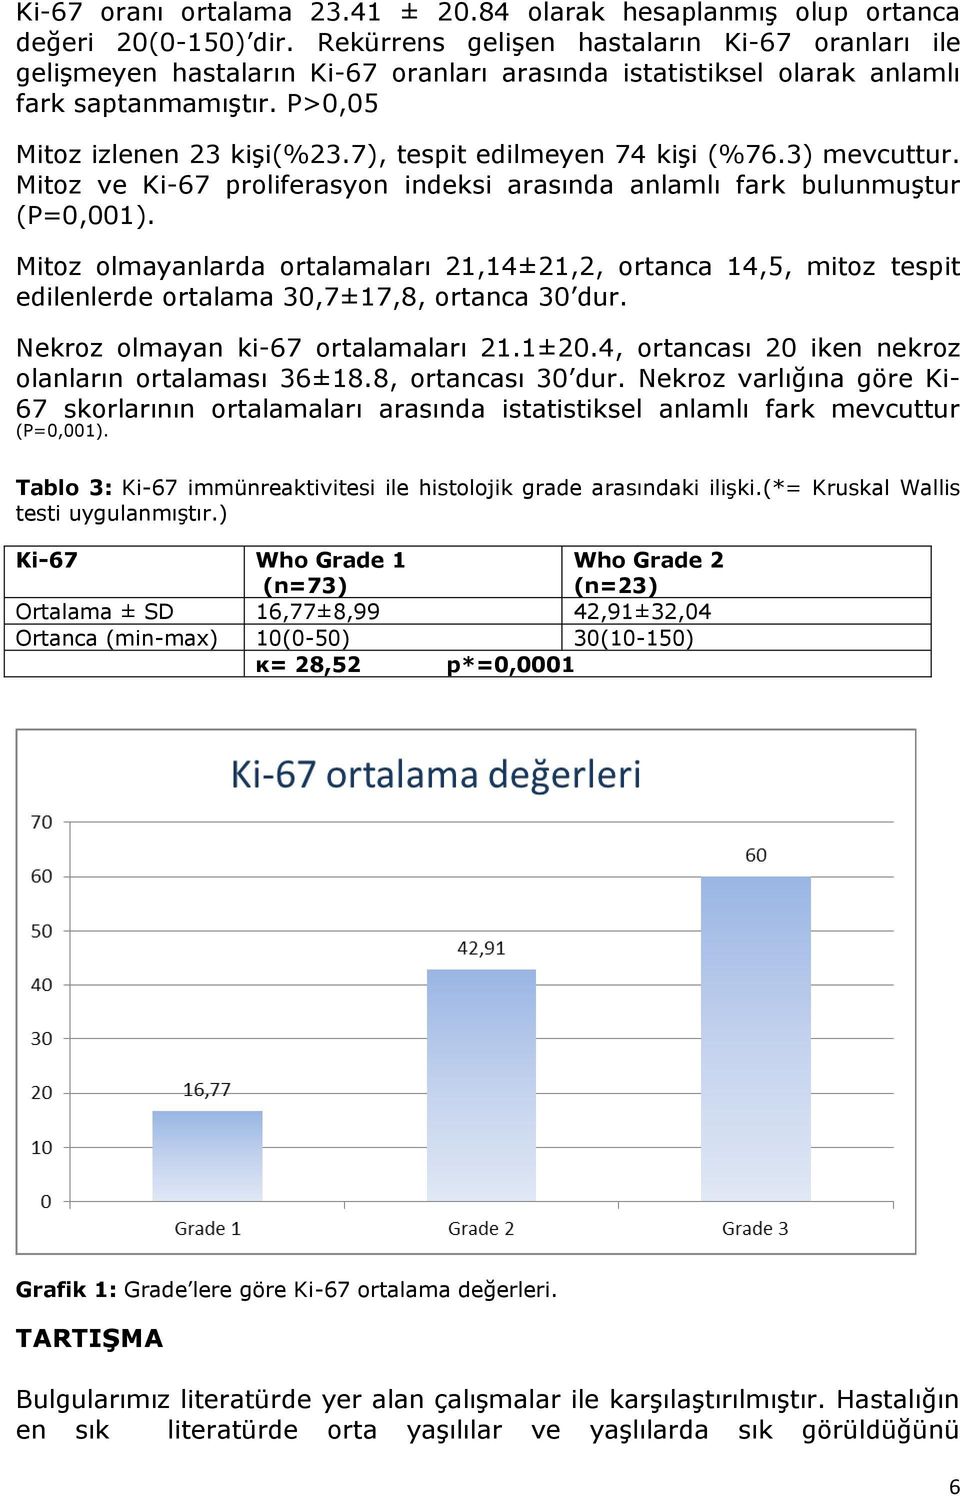 7), tespit edilmeyen 74 kişi (%76.3) mevcuttur. Mitoz ve Ki-67 proliferasyon indeksi arasında anlamlı fark bulunmuştur (P=0,001).